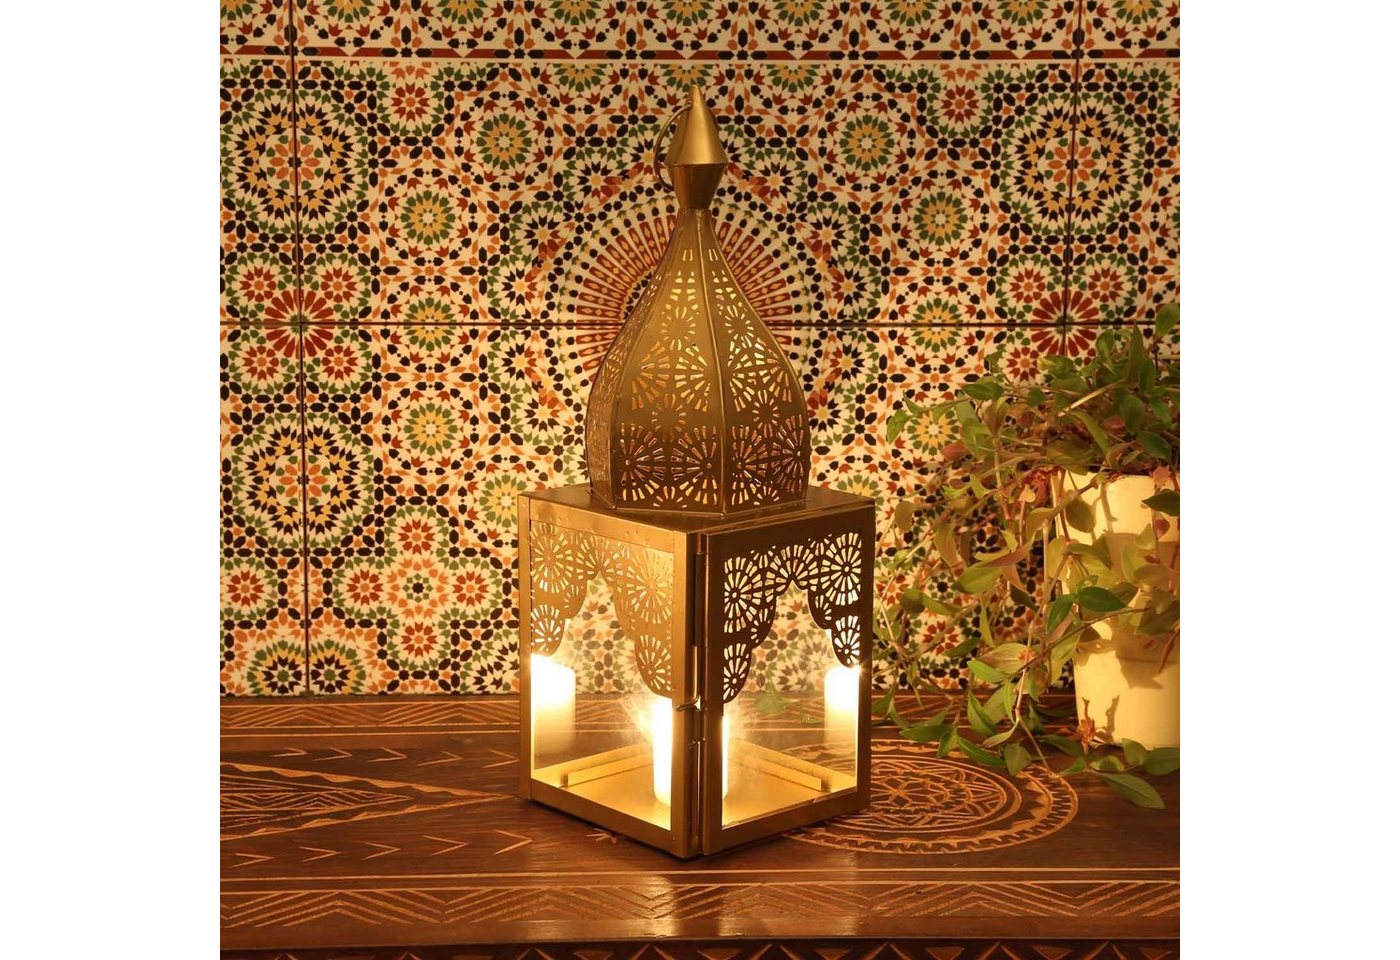 Casa Moro Windlicht Orientalisches Windlicht Modena Gold M aus Glas & Metall Höhe 44cm (Marokkanische Laterne Kerzenhalter, Minaretten Form Wohn-Deko), Ramadan Eid Deko IRL650 von Casa Moro